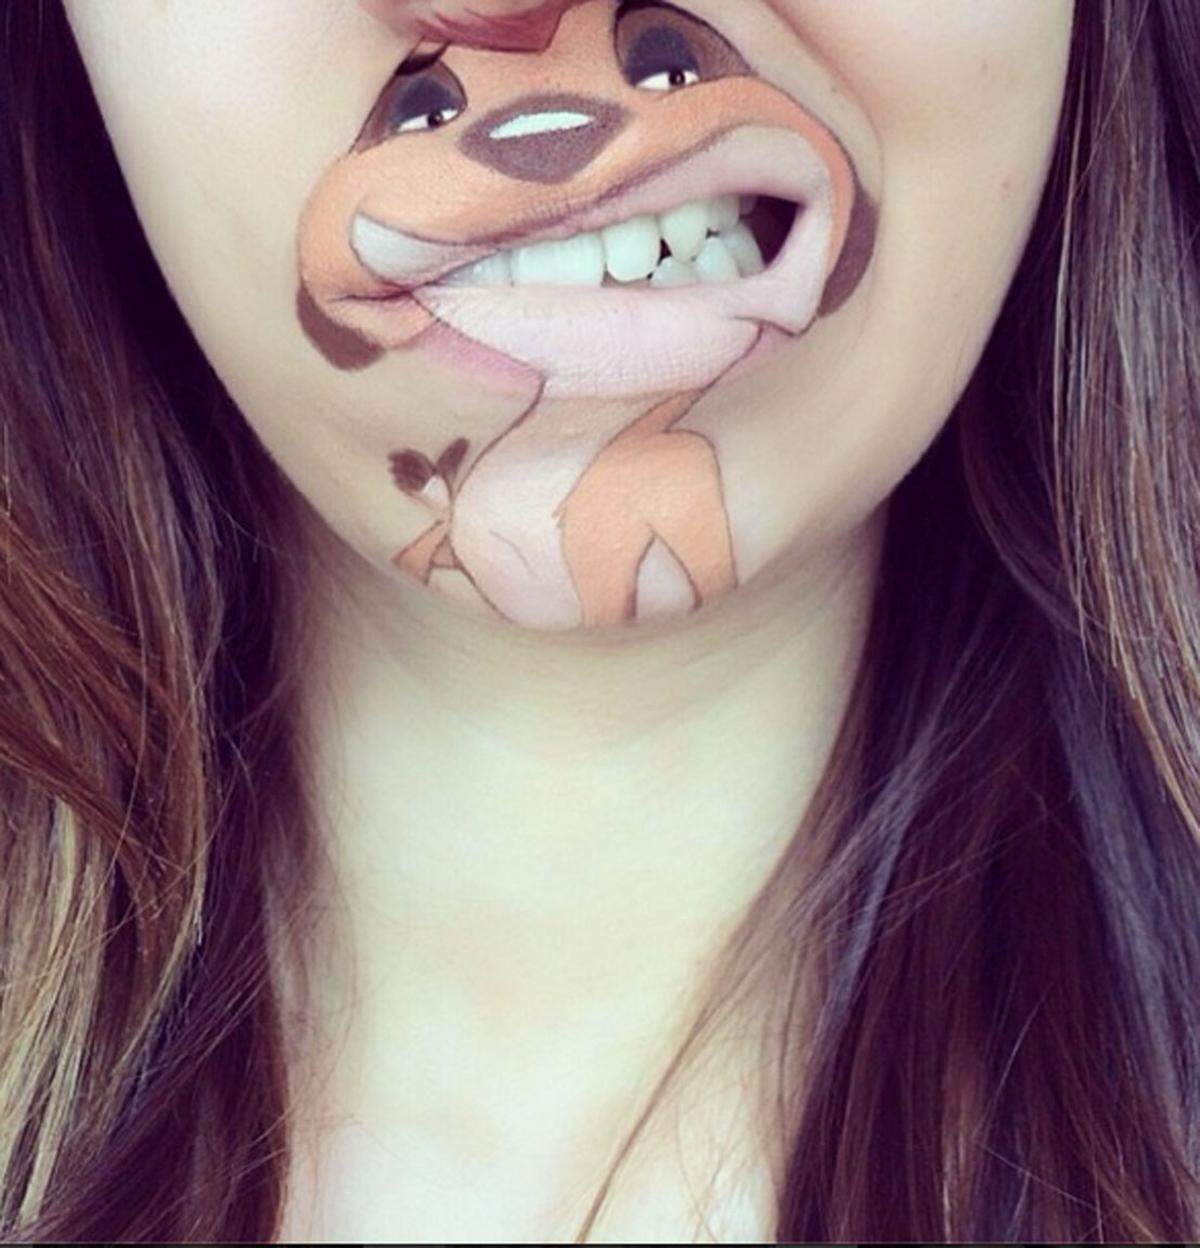 Make-up-Artist Laura Jenkinson aus London zeigt auf ihrem Instagram-Account, was man aus ein bisschen Farbe alles machen kann. Sie bemalt ihre Lippen mit Comicfiguren, die durch ihre Mundbewegungen zum Leben erwachen. So etwa Erdmännchen Timon von "König der Löwen".